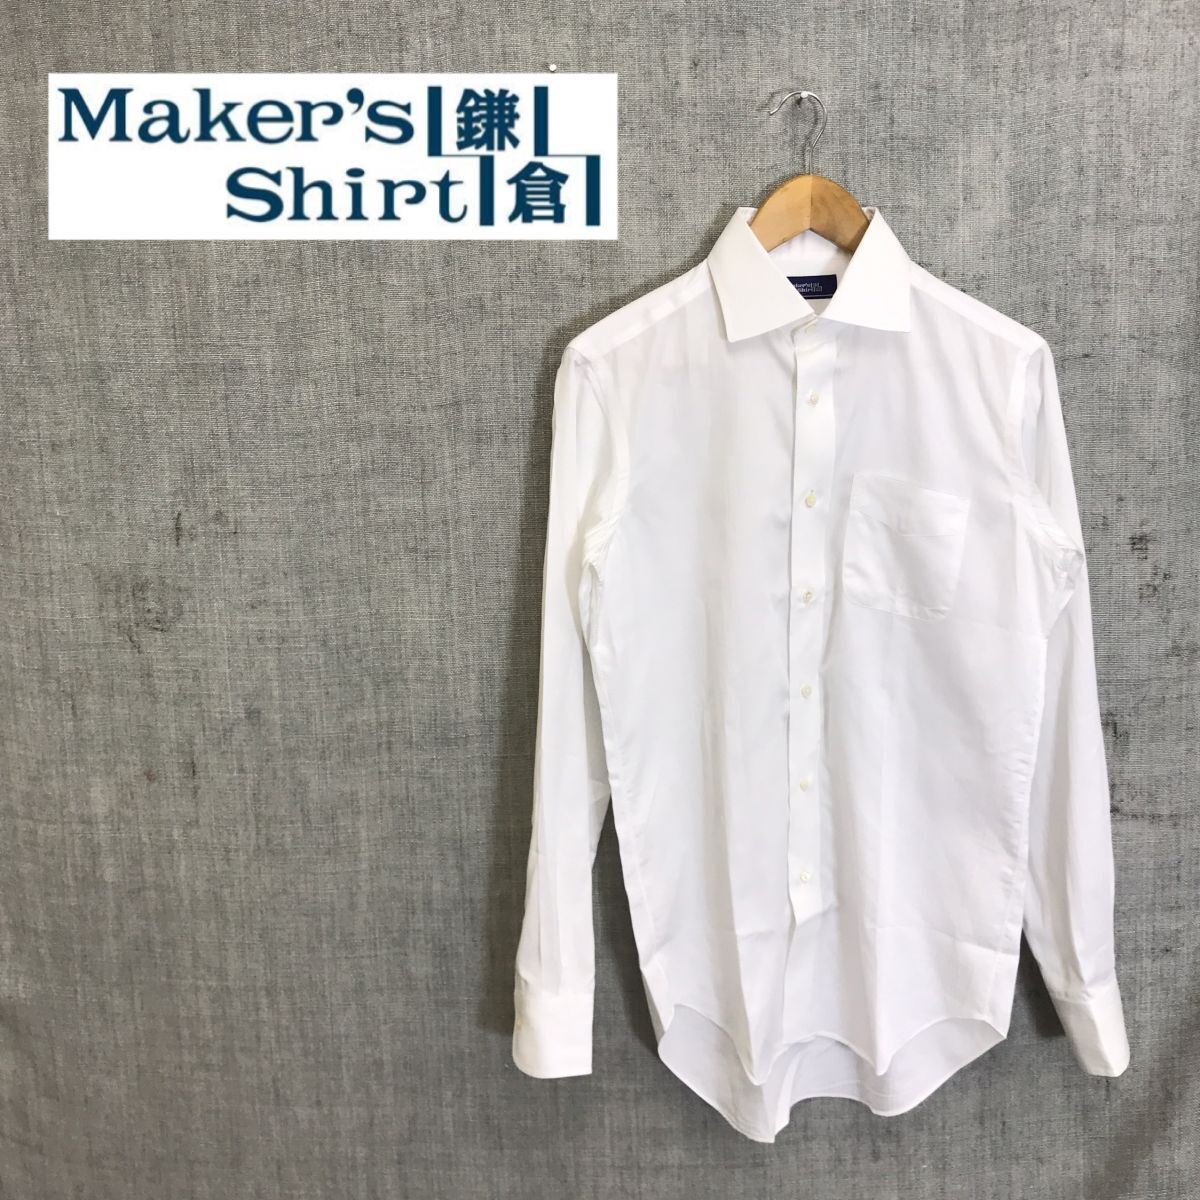 A2578-G◆Maker's Shirt鎌倉 メーカーズシャツカマクラ ワイシャツ◆綿100% 日本製 ホワイト 無地 メンズ トップス 長袖 ストライプ スーツの画像1